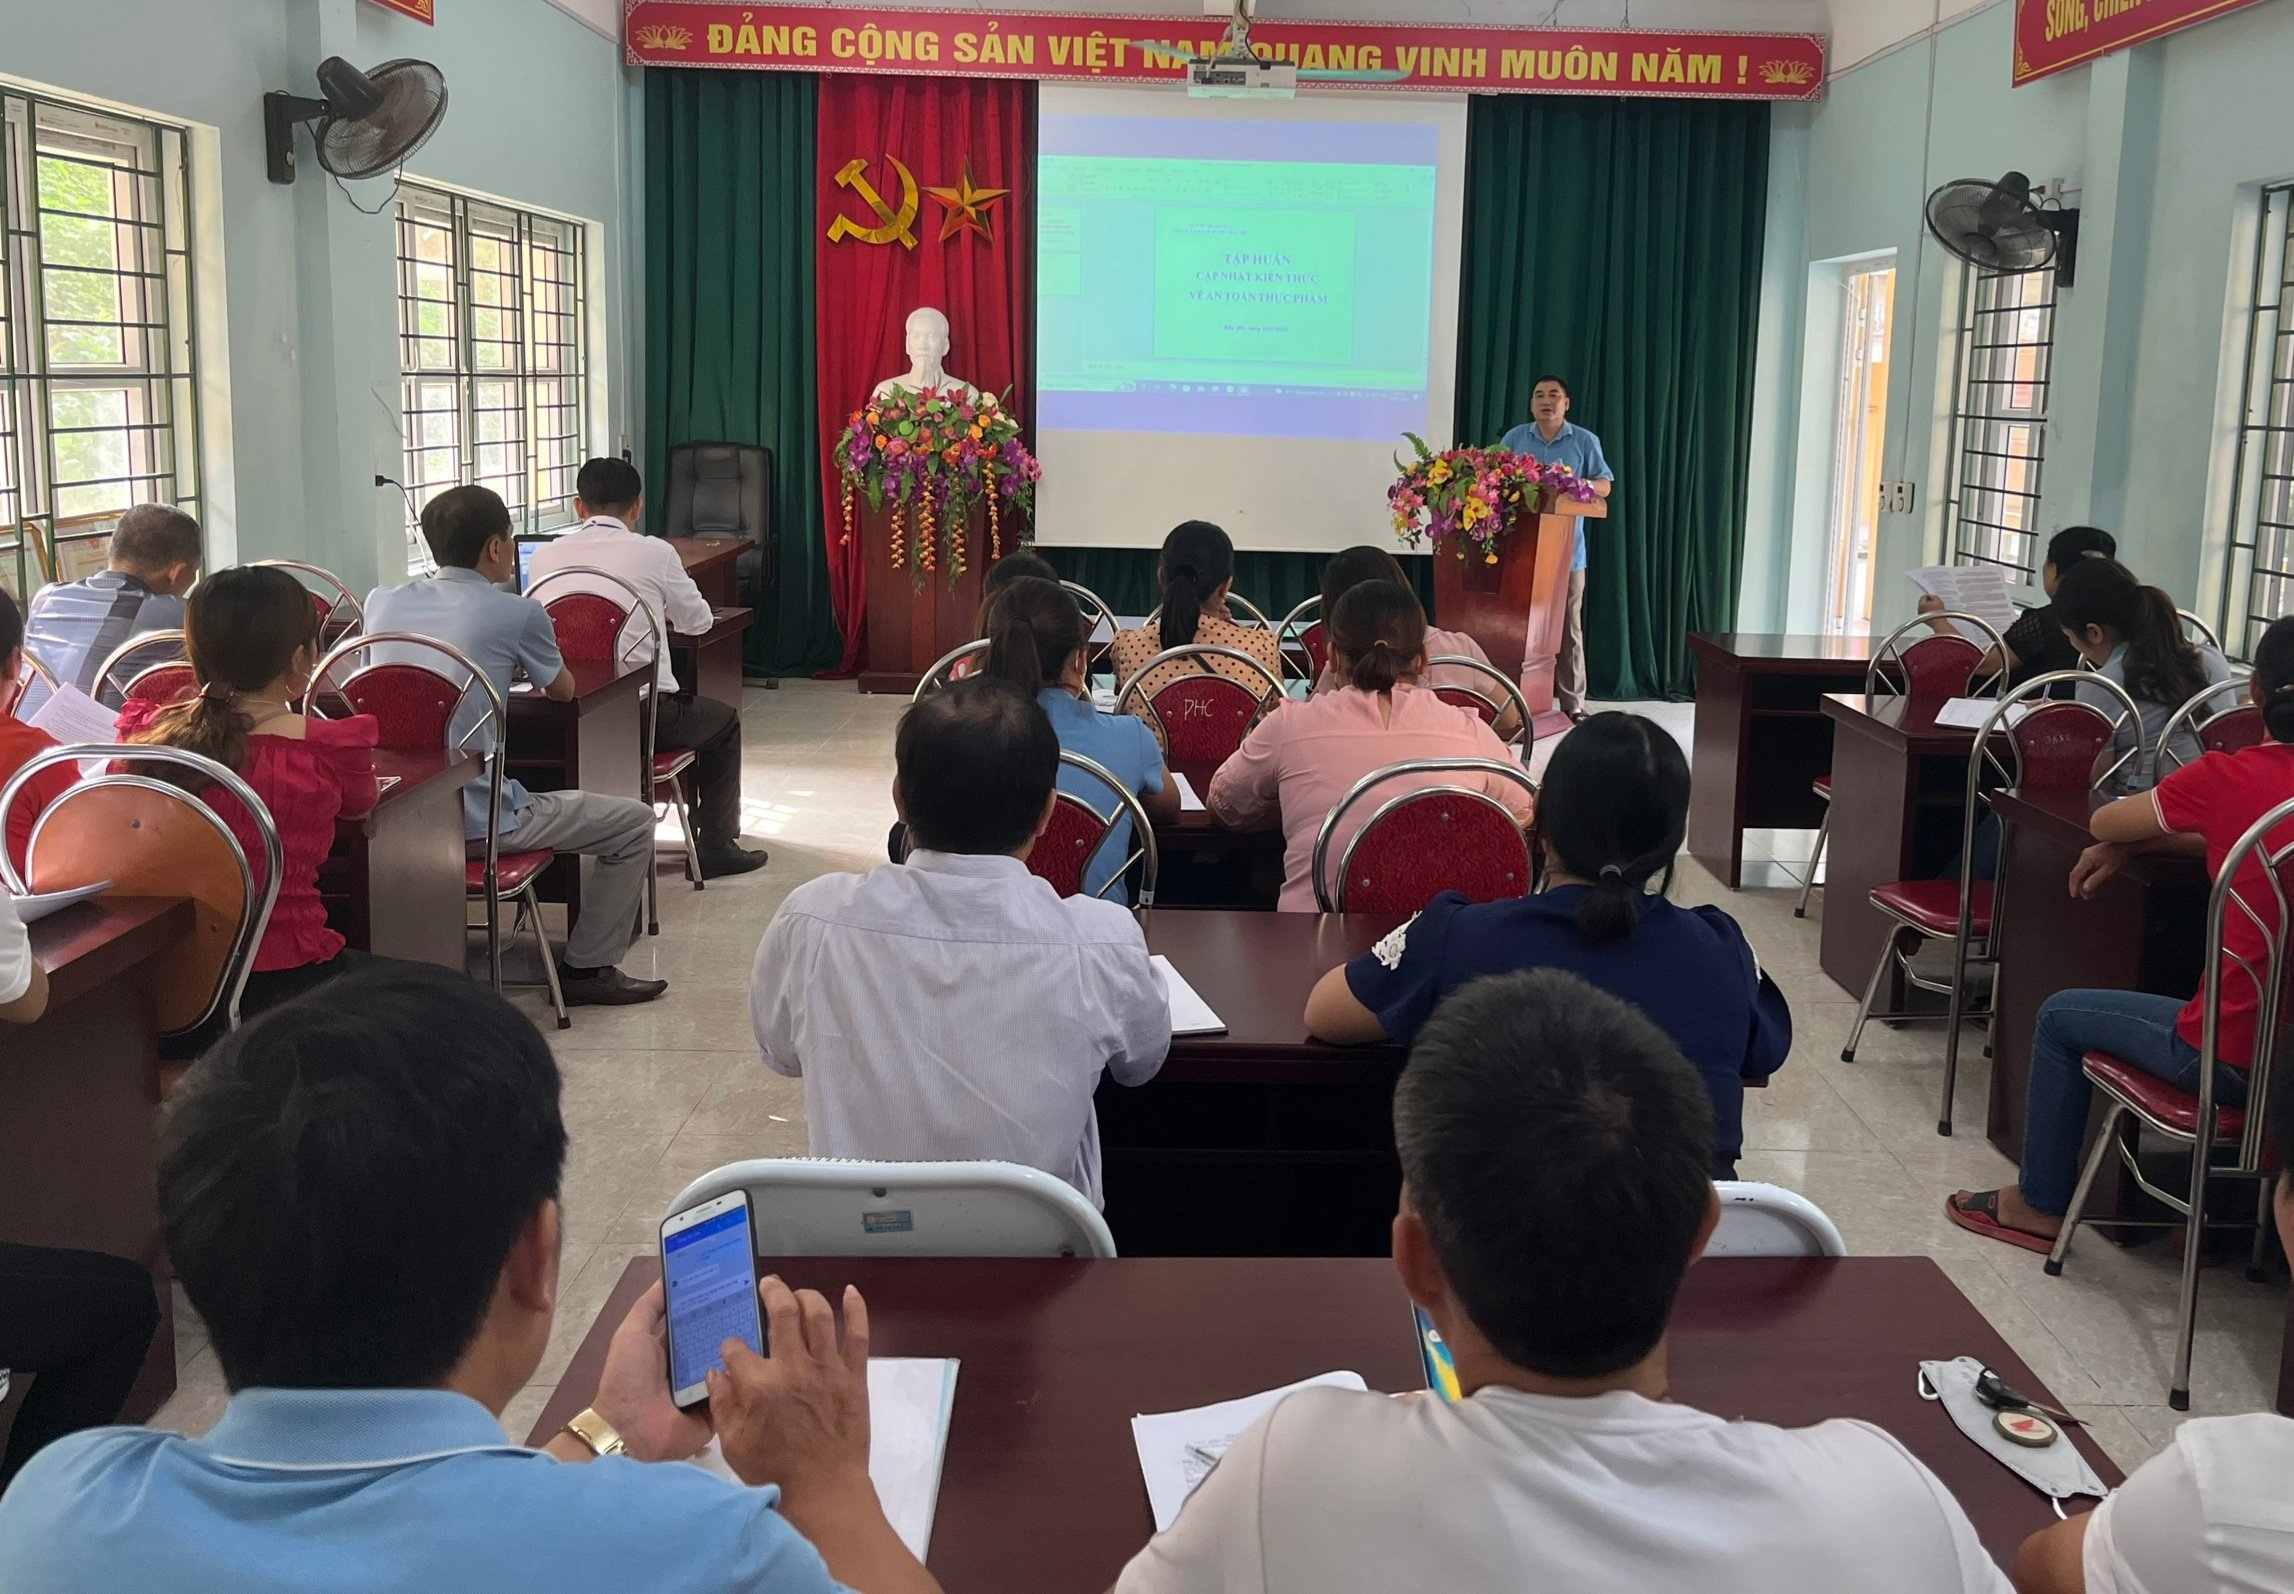 Đồng chí Nguyễn Duy Hoa – Giám đốc Trung tâm Y tế khai mạc lớp tập huấn